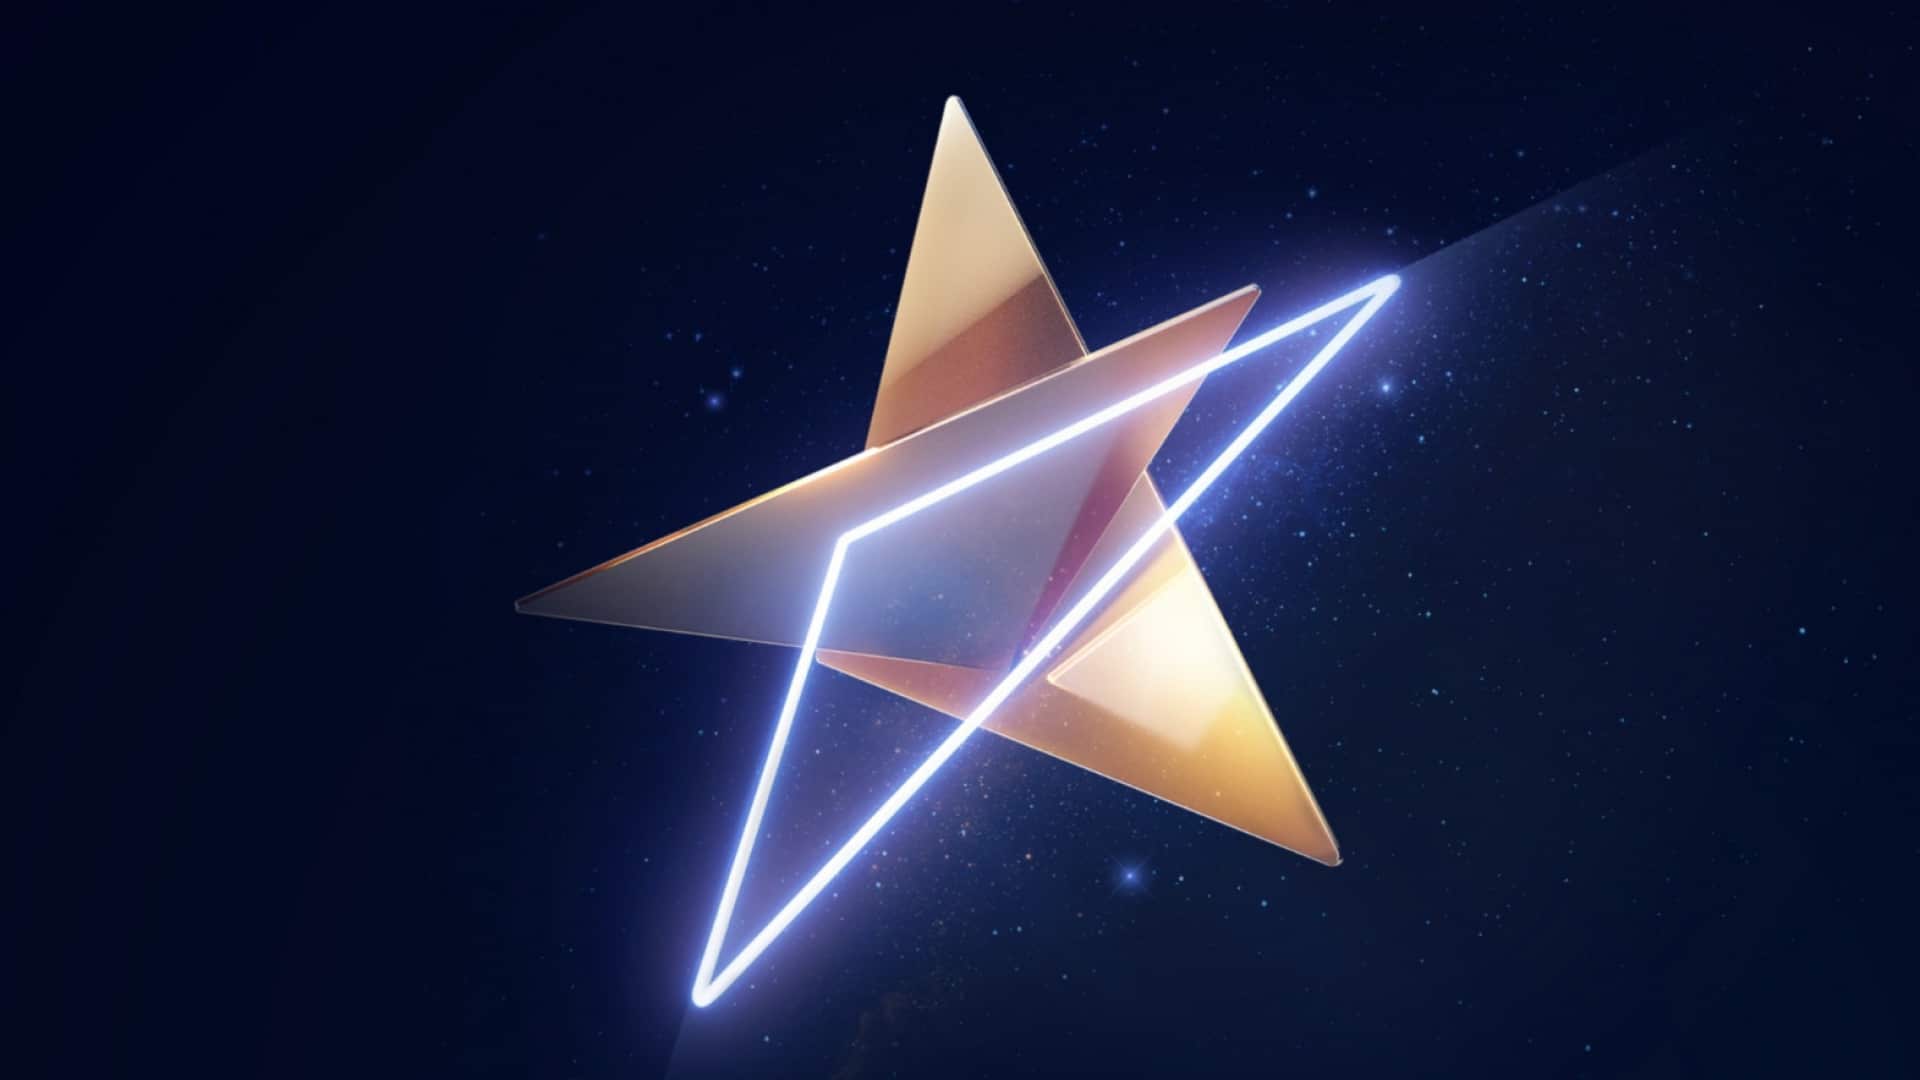 Eurovision Song Contest 2019 arculati design